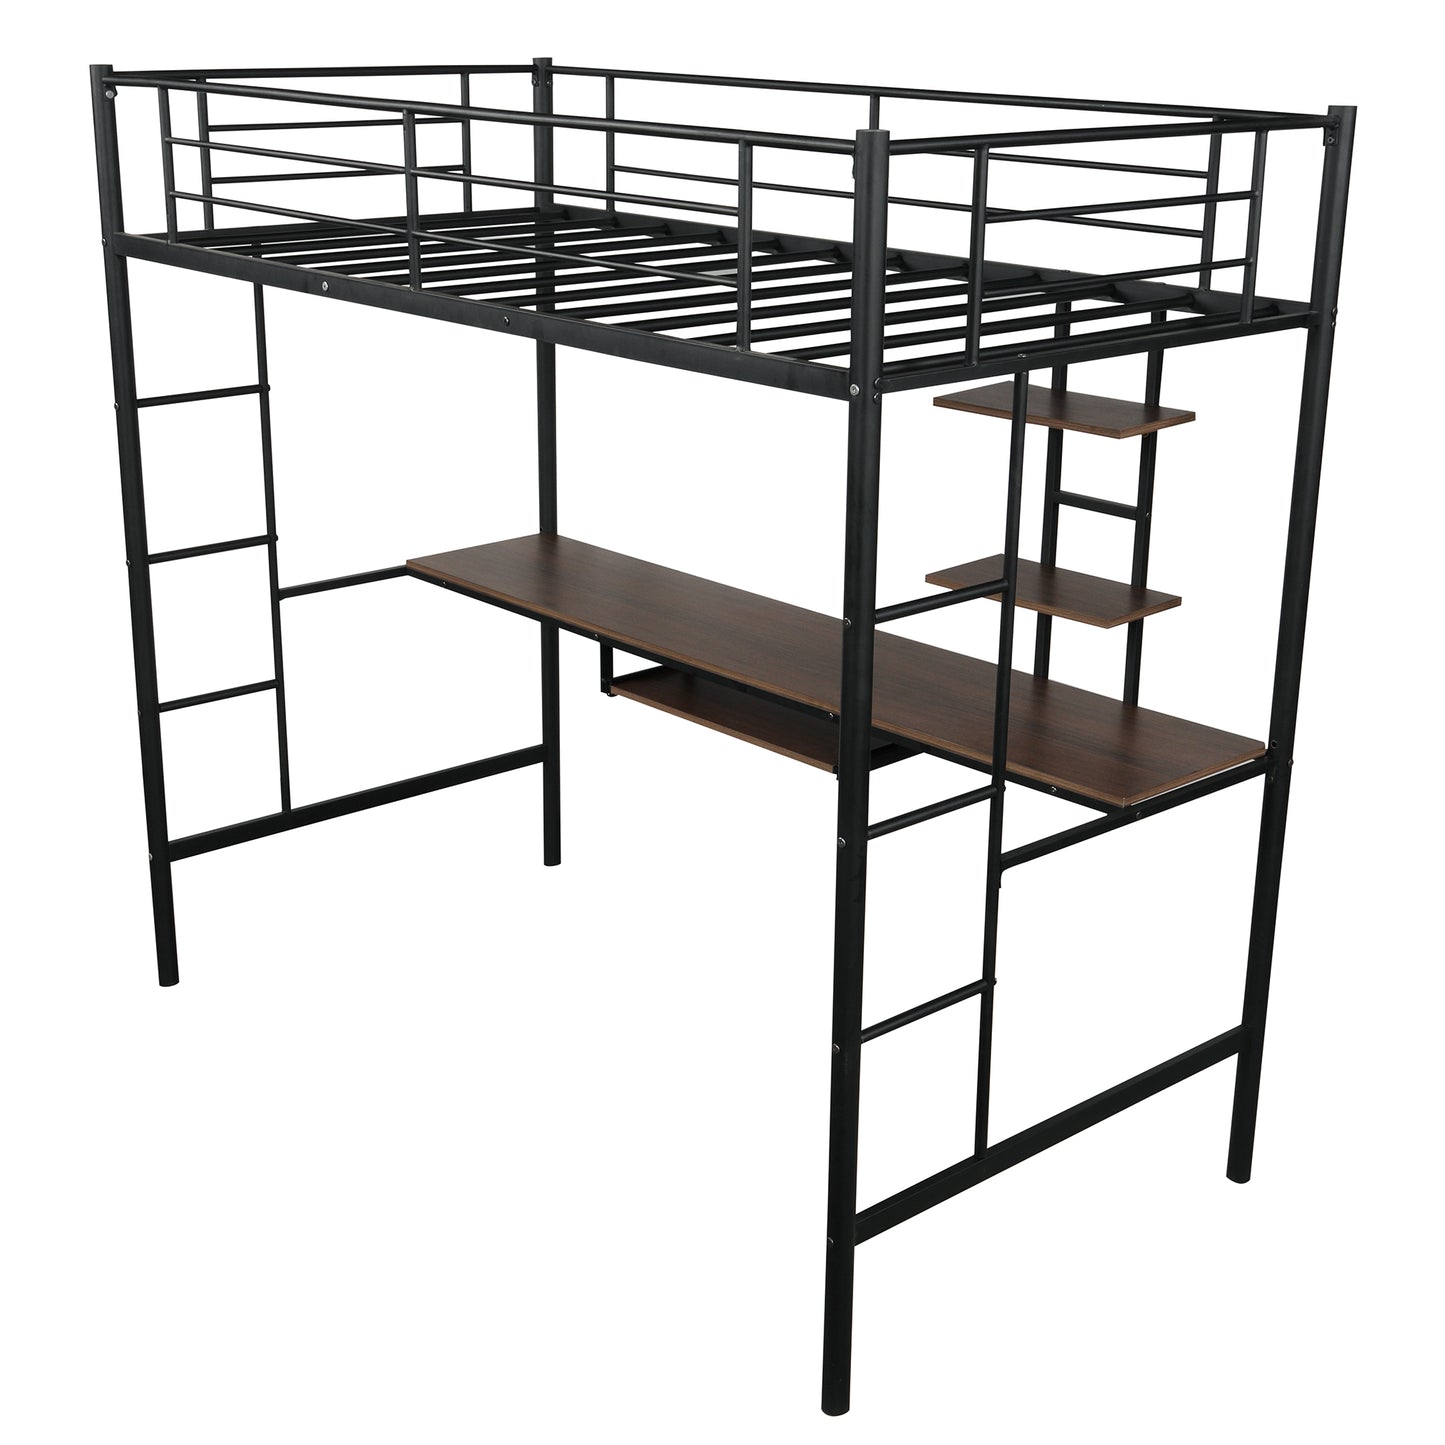 Wiim Twin Loft Bed w/ Desk & Shelf